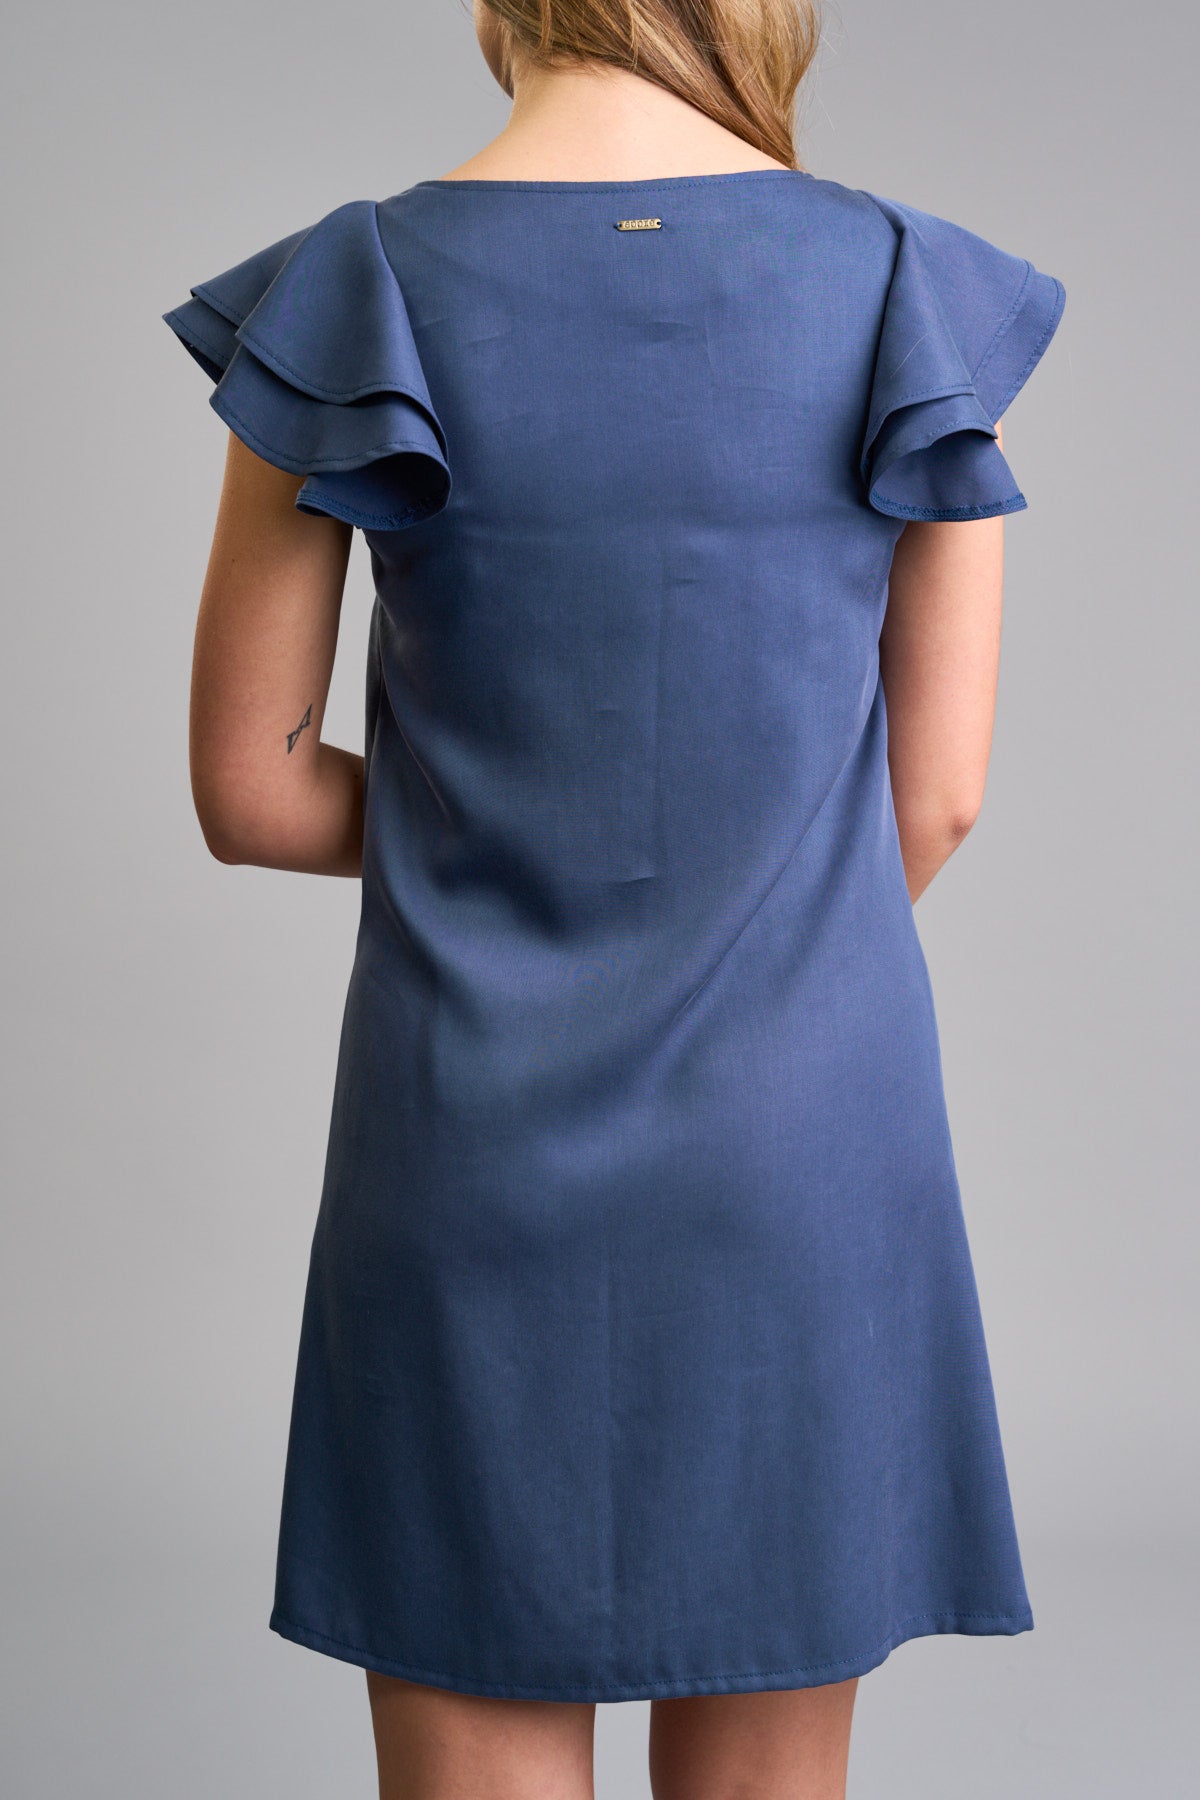 Dámské krátké šaty s volánovými rukávy - modré